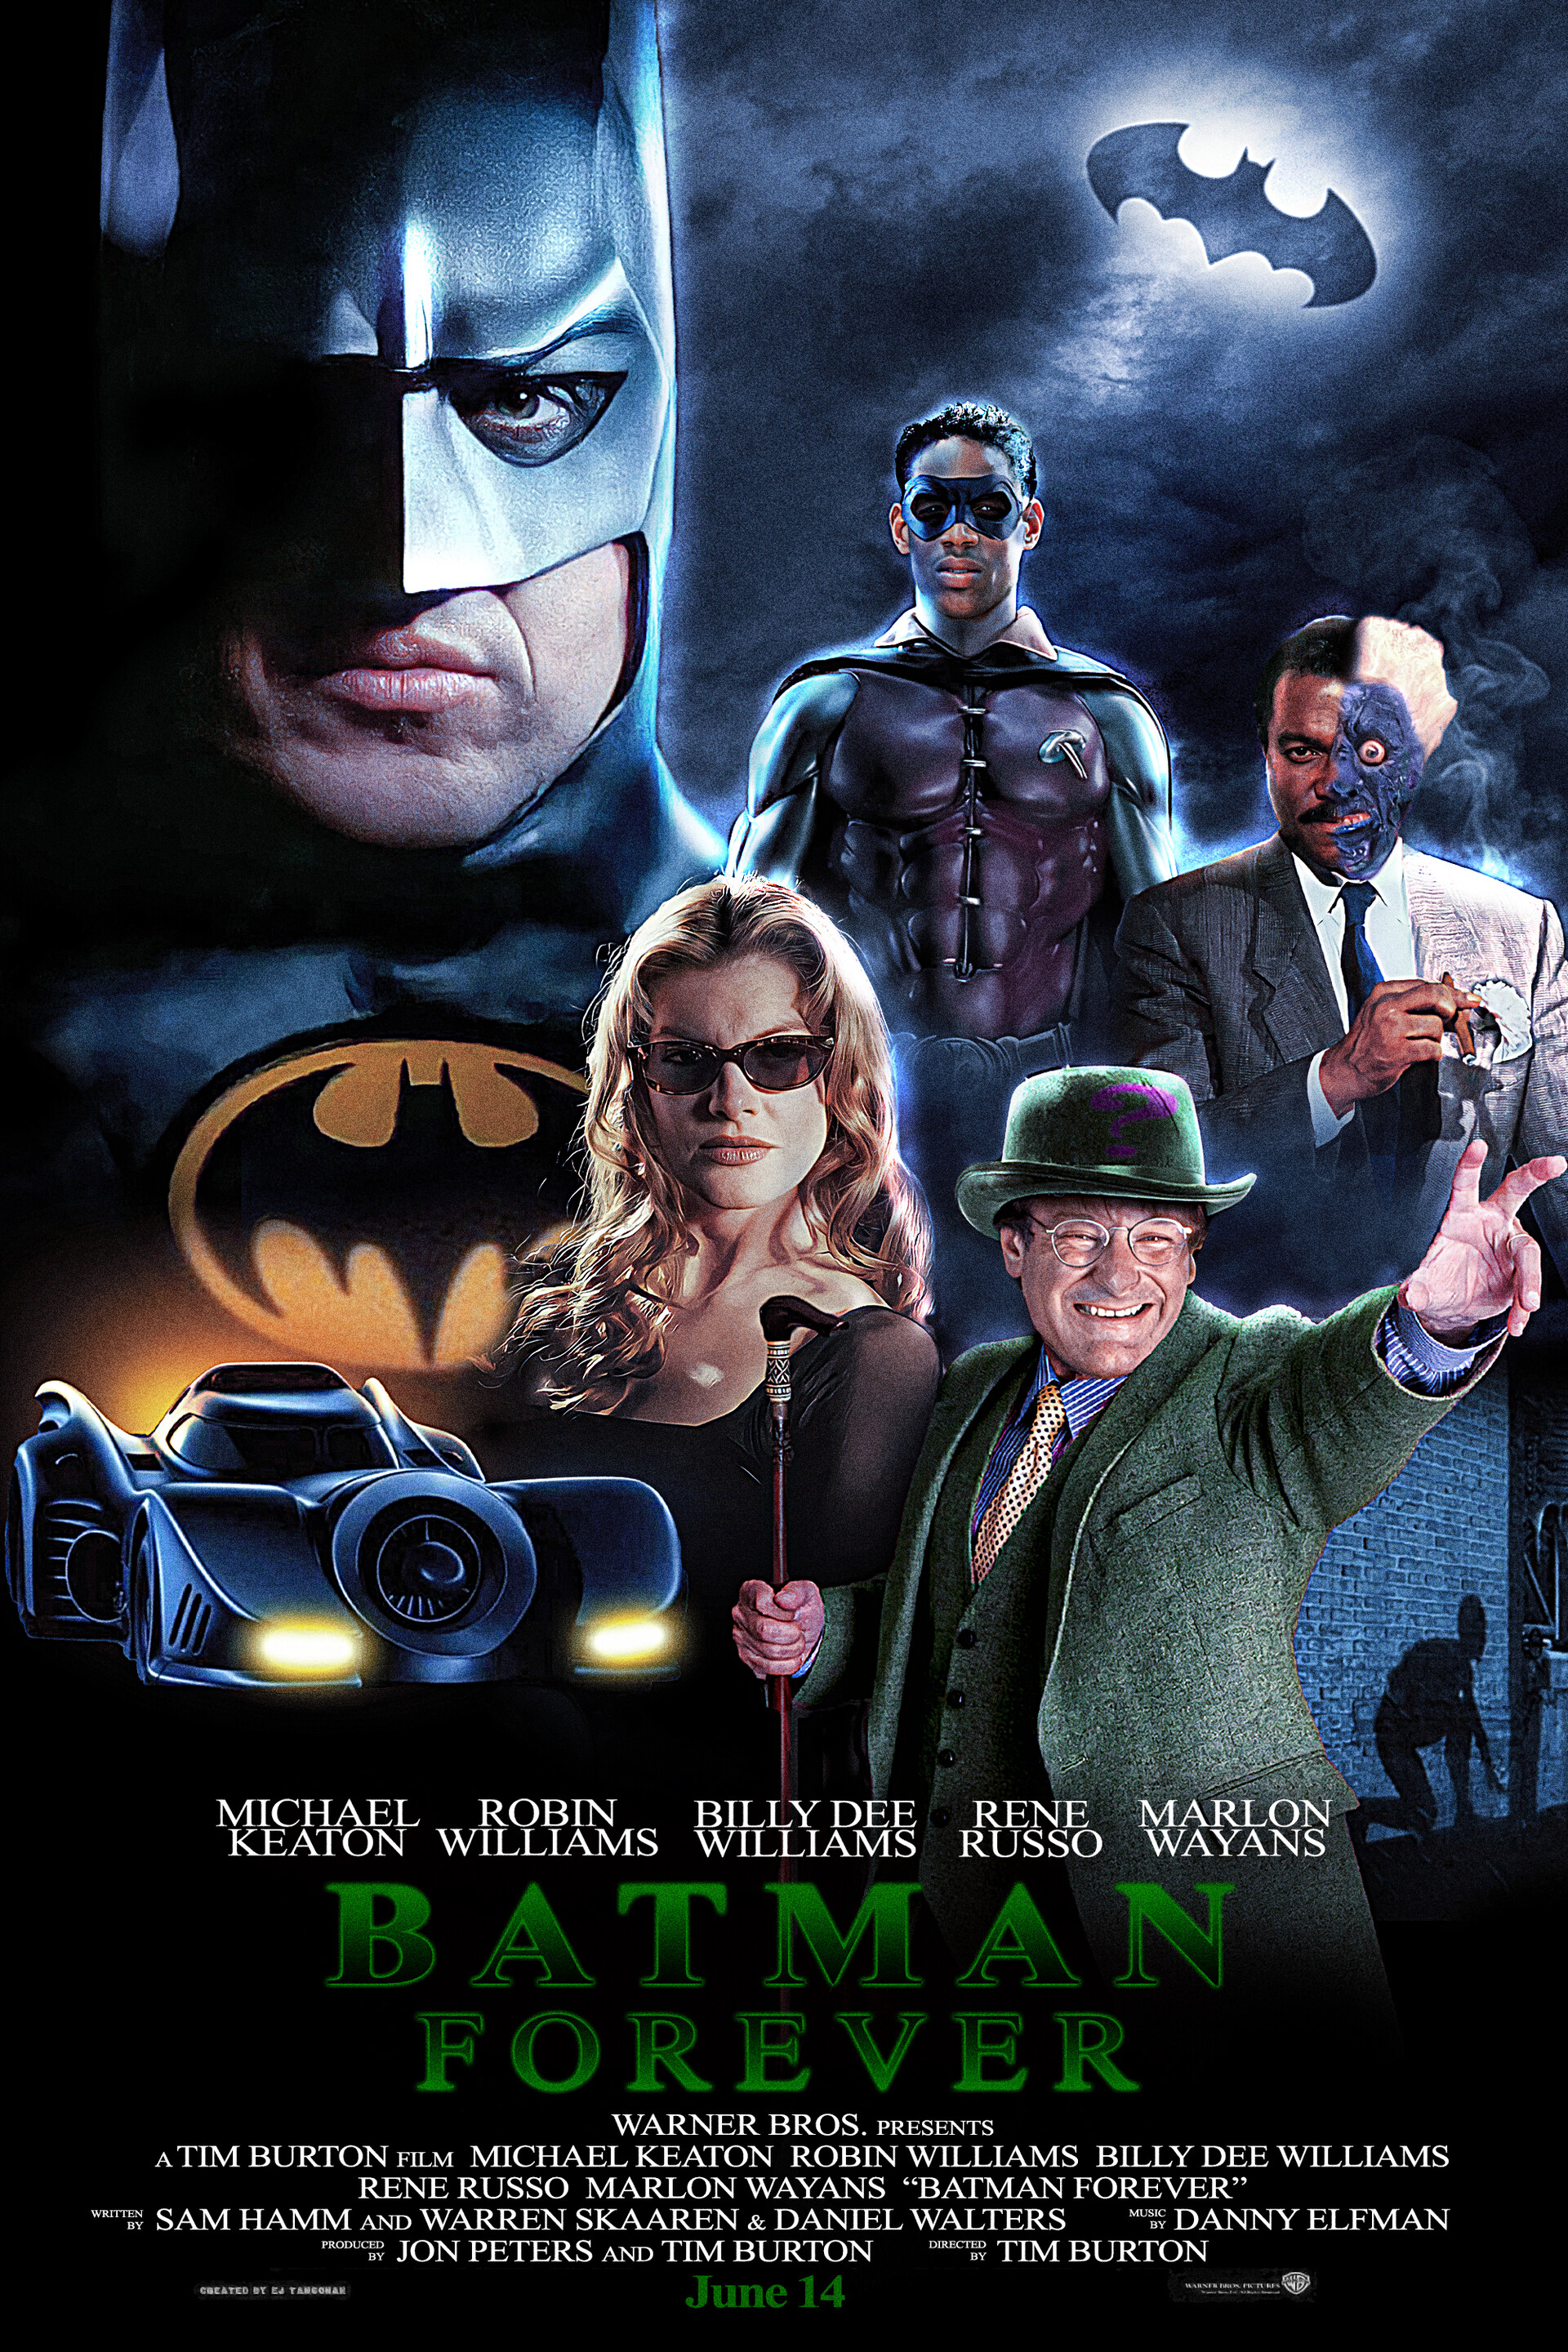 ArtStation - Tim Burton's Batman Forever Poster